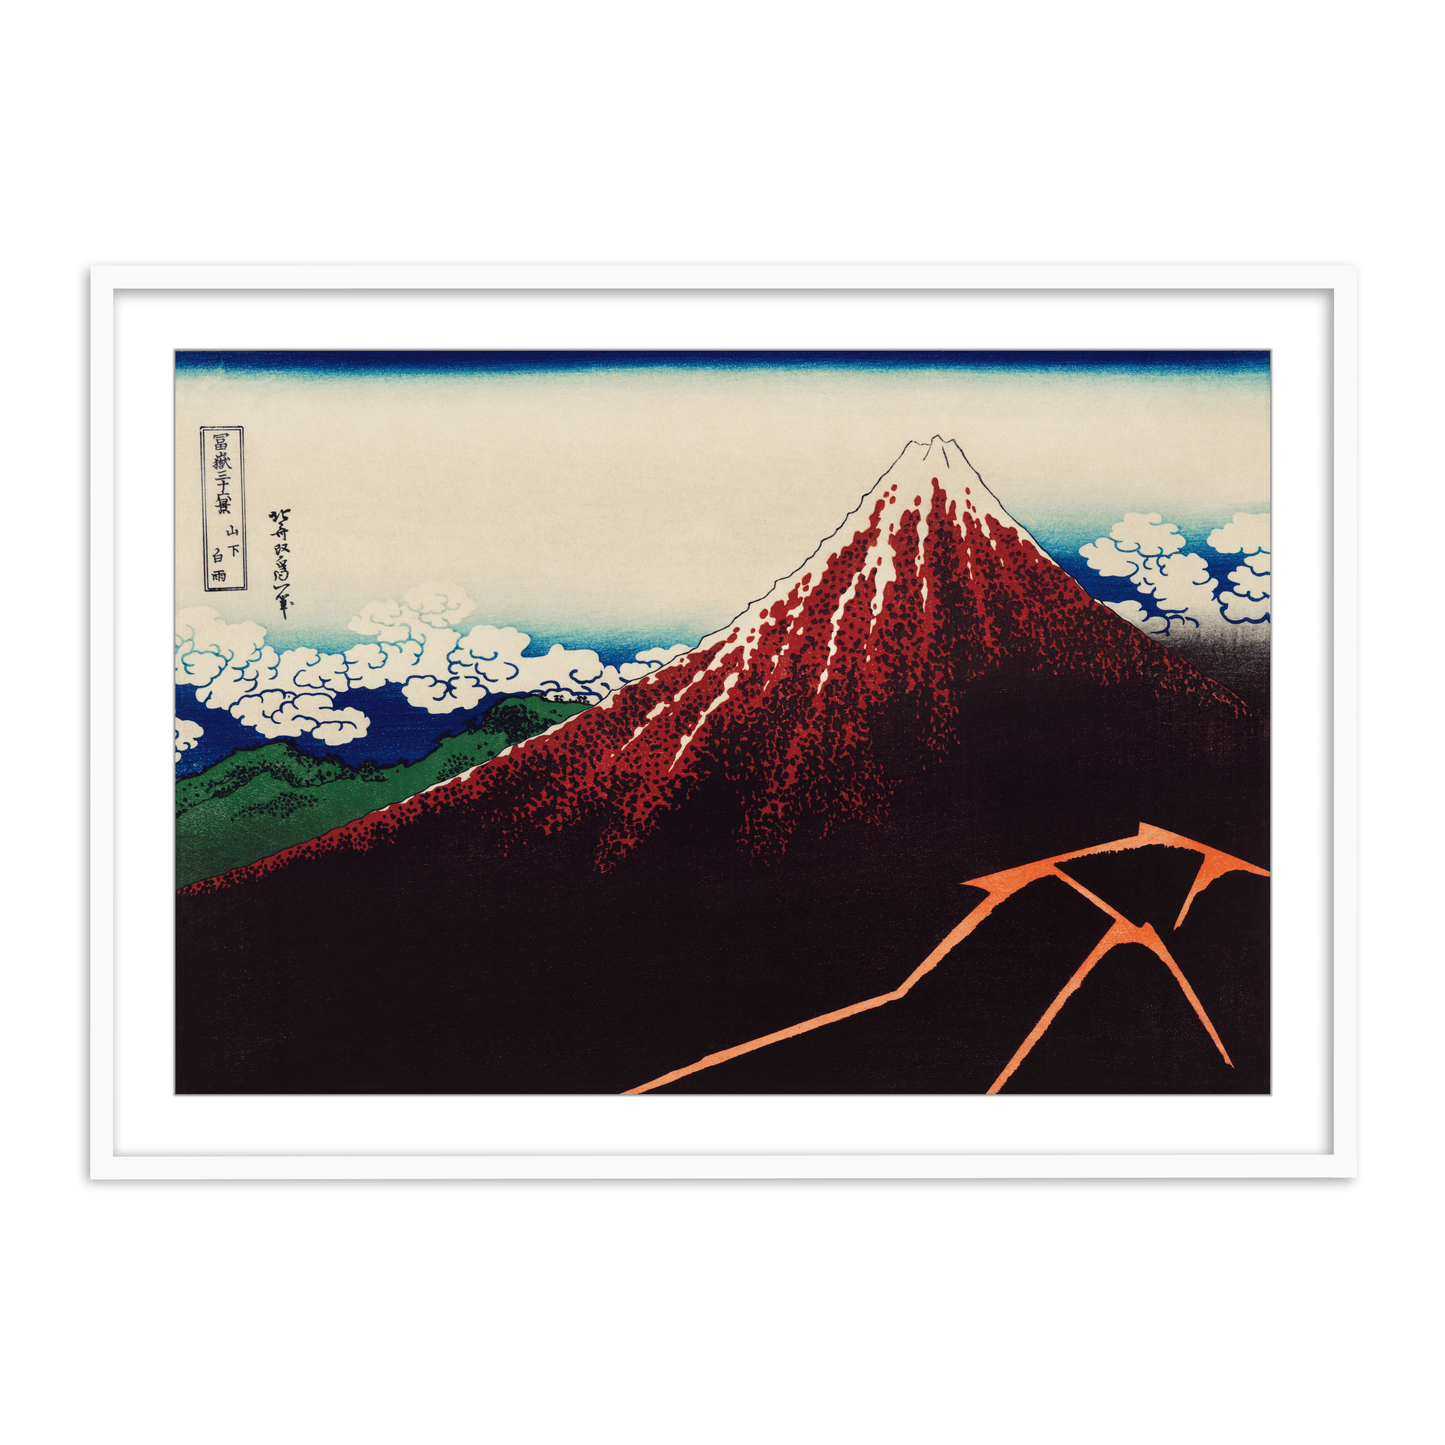 Sanka Hakuu by Katsushika Hokusai